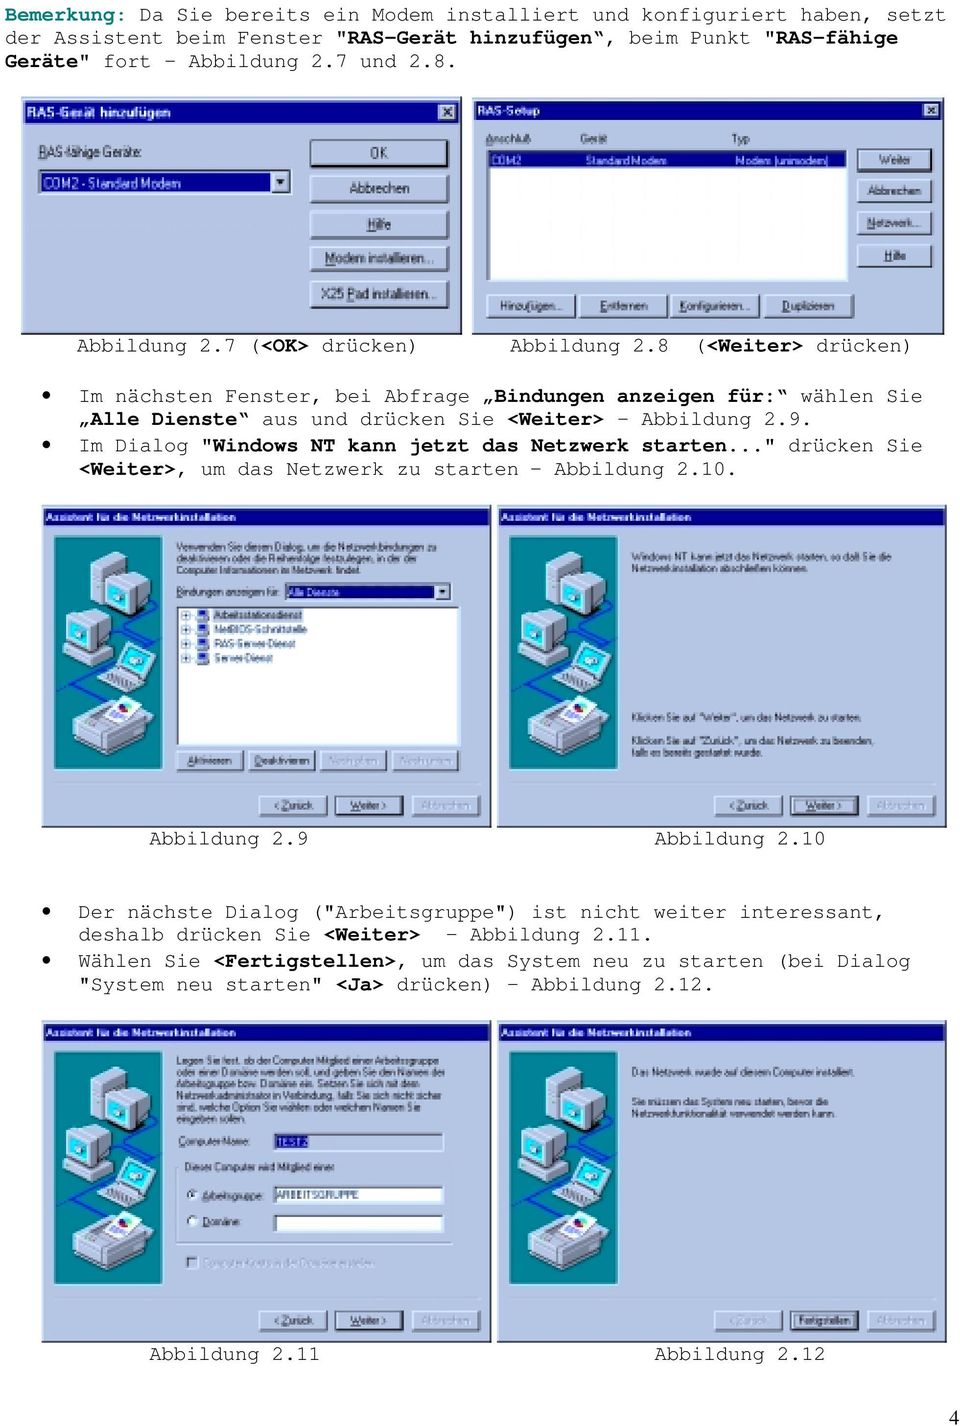 Im Dialog "Windows NT kann jetzt das Netzwerk starten..." drücken Sie <Weiter>, um das Netzwerk zu starten Abbildung 2.10. Abbildung 2.9 Abbildung 2.